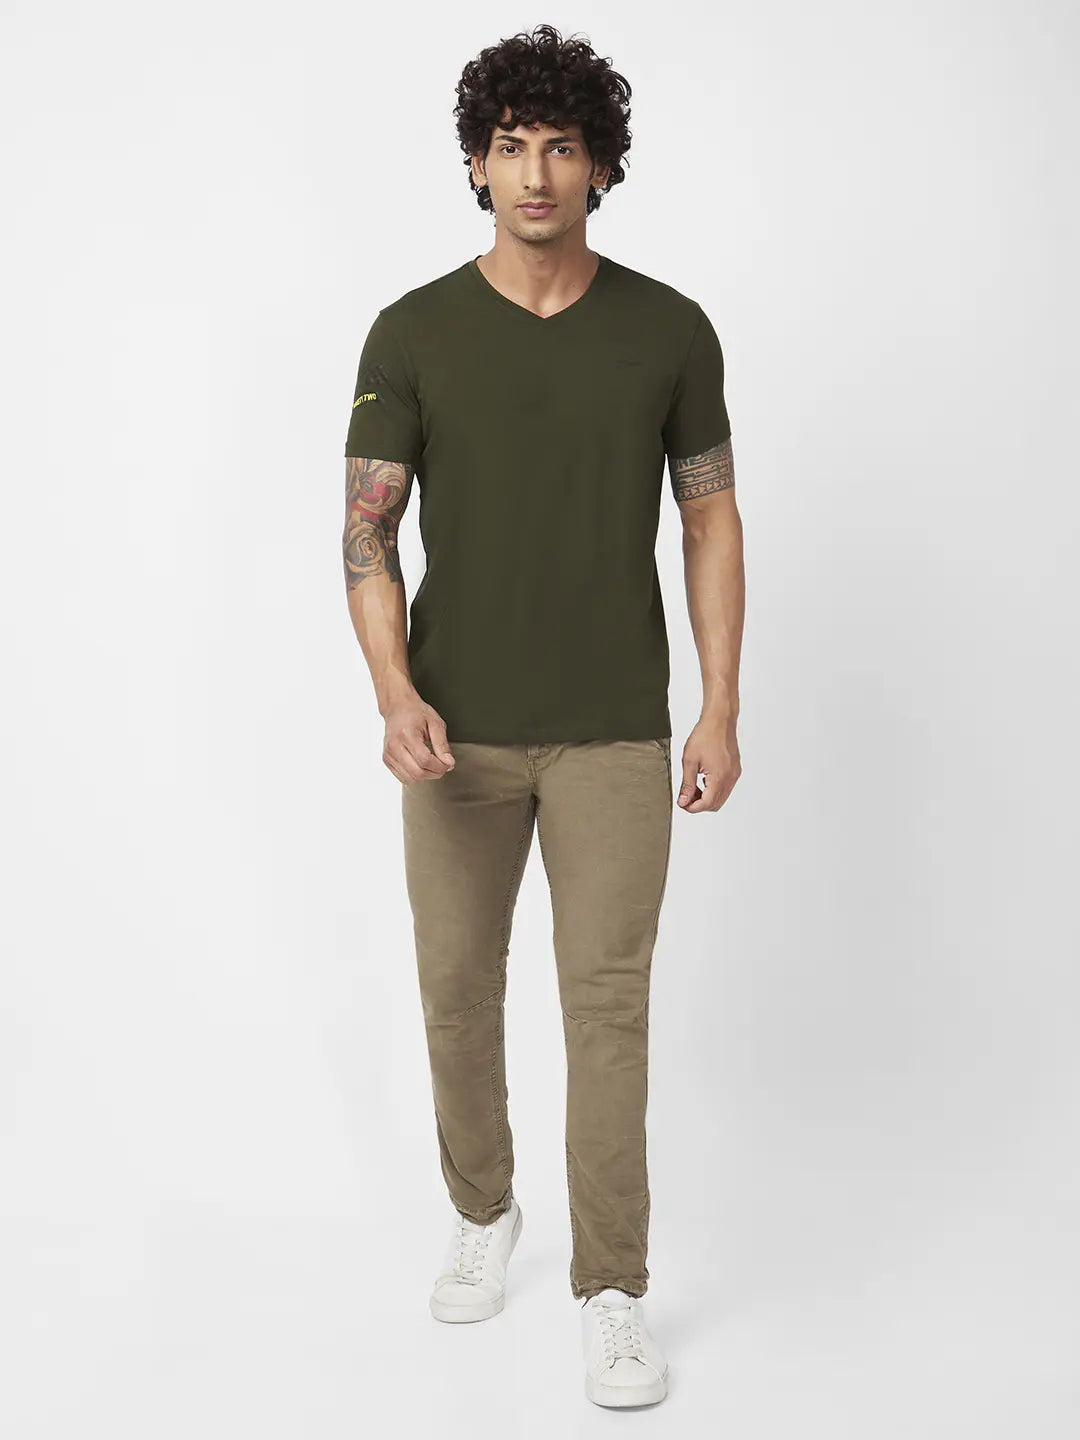 Spykar Men Rifle Green Blended Slim Fit Half Sleeve V-Neck Plain Tshirt